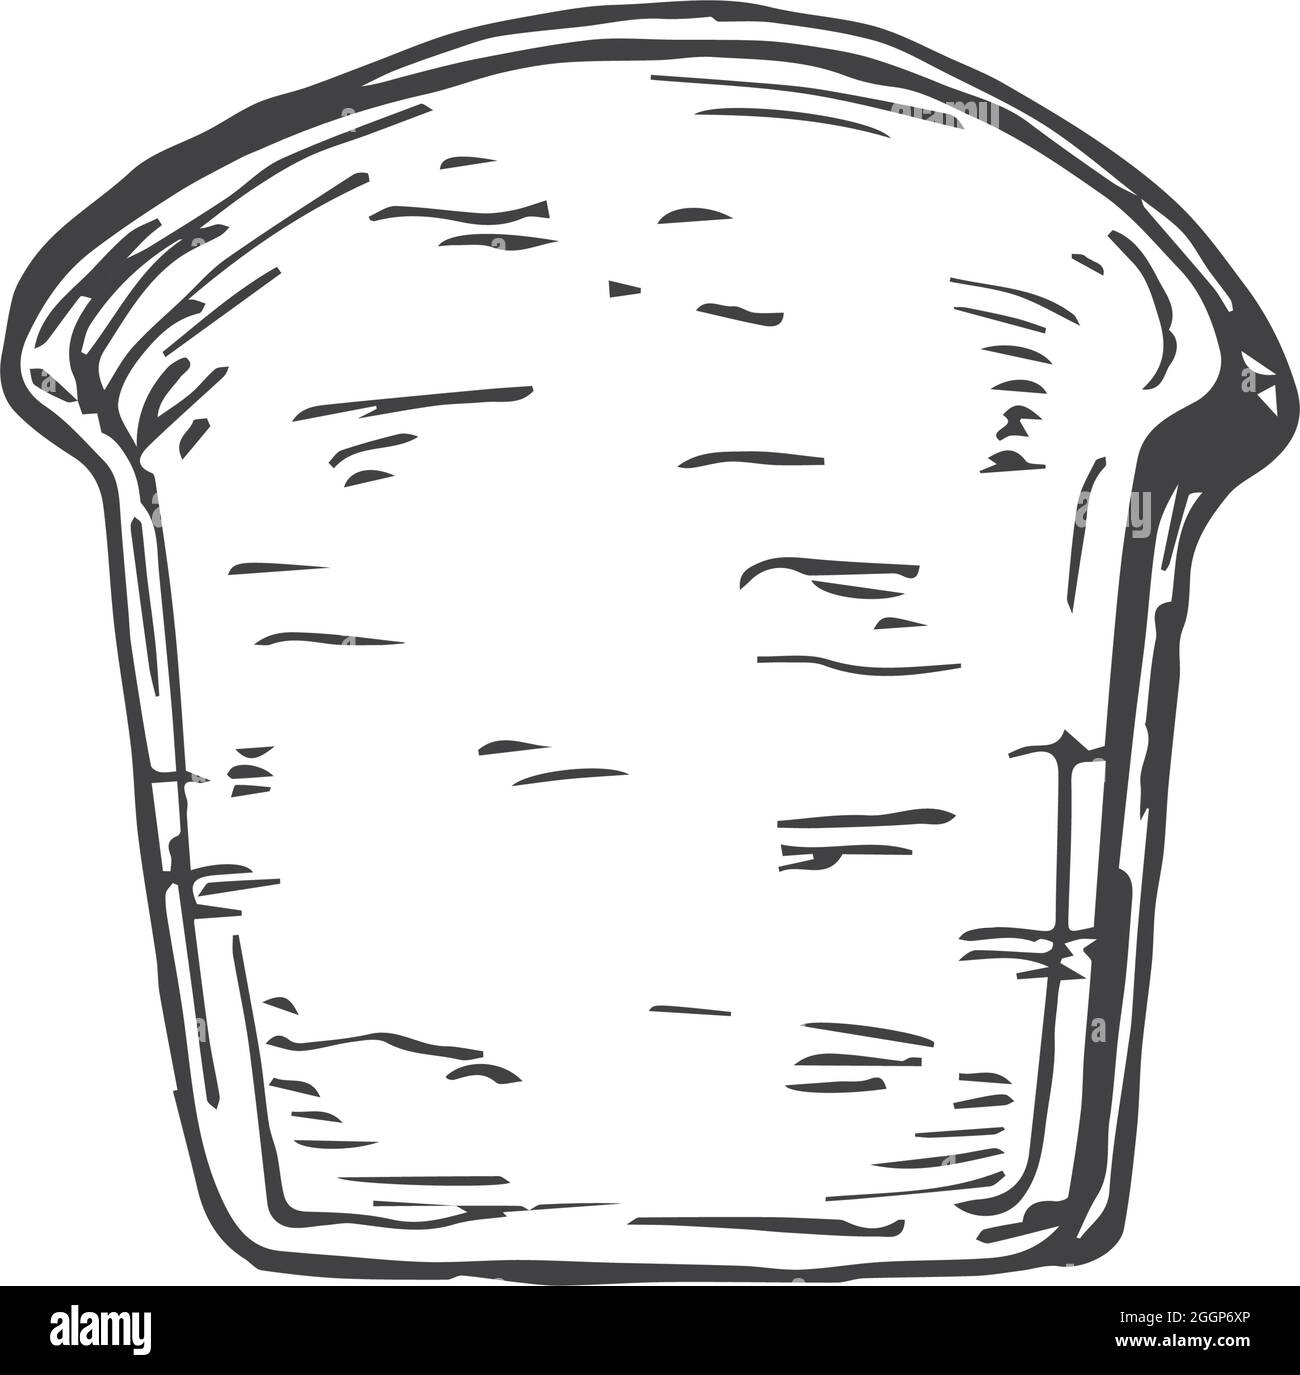 Esquisse Vector Bakery. Illustration dessinée à la main d'un morceau de pain grillé. Isolé Illustration de Vecteur